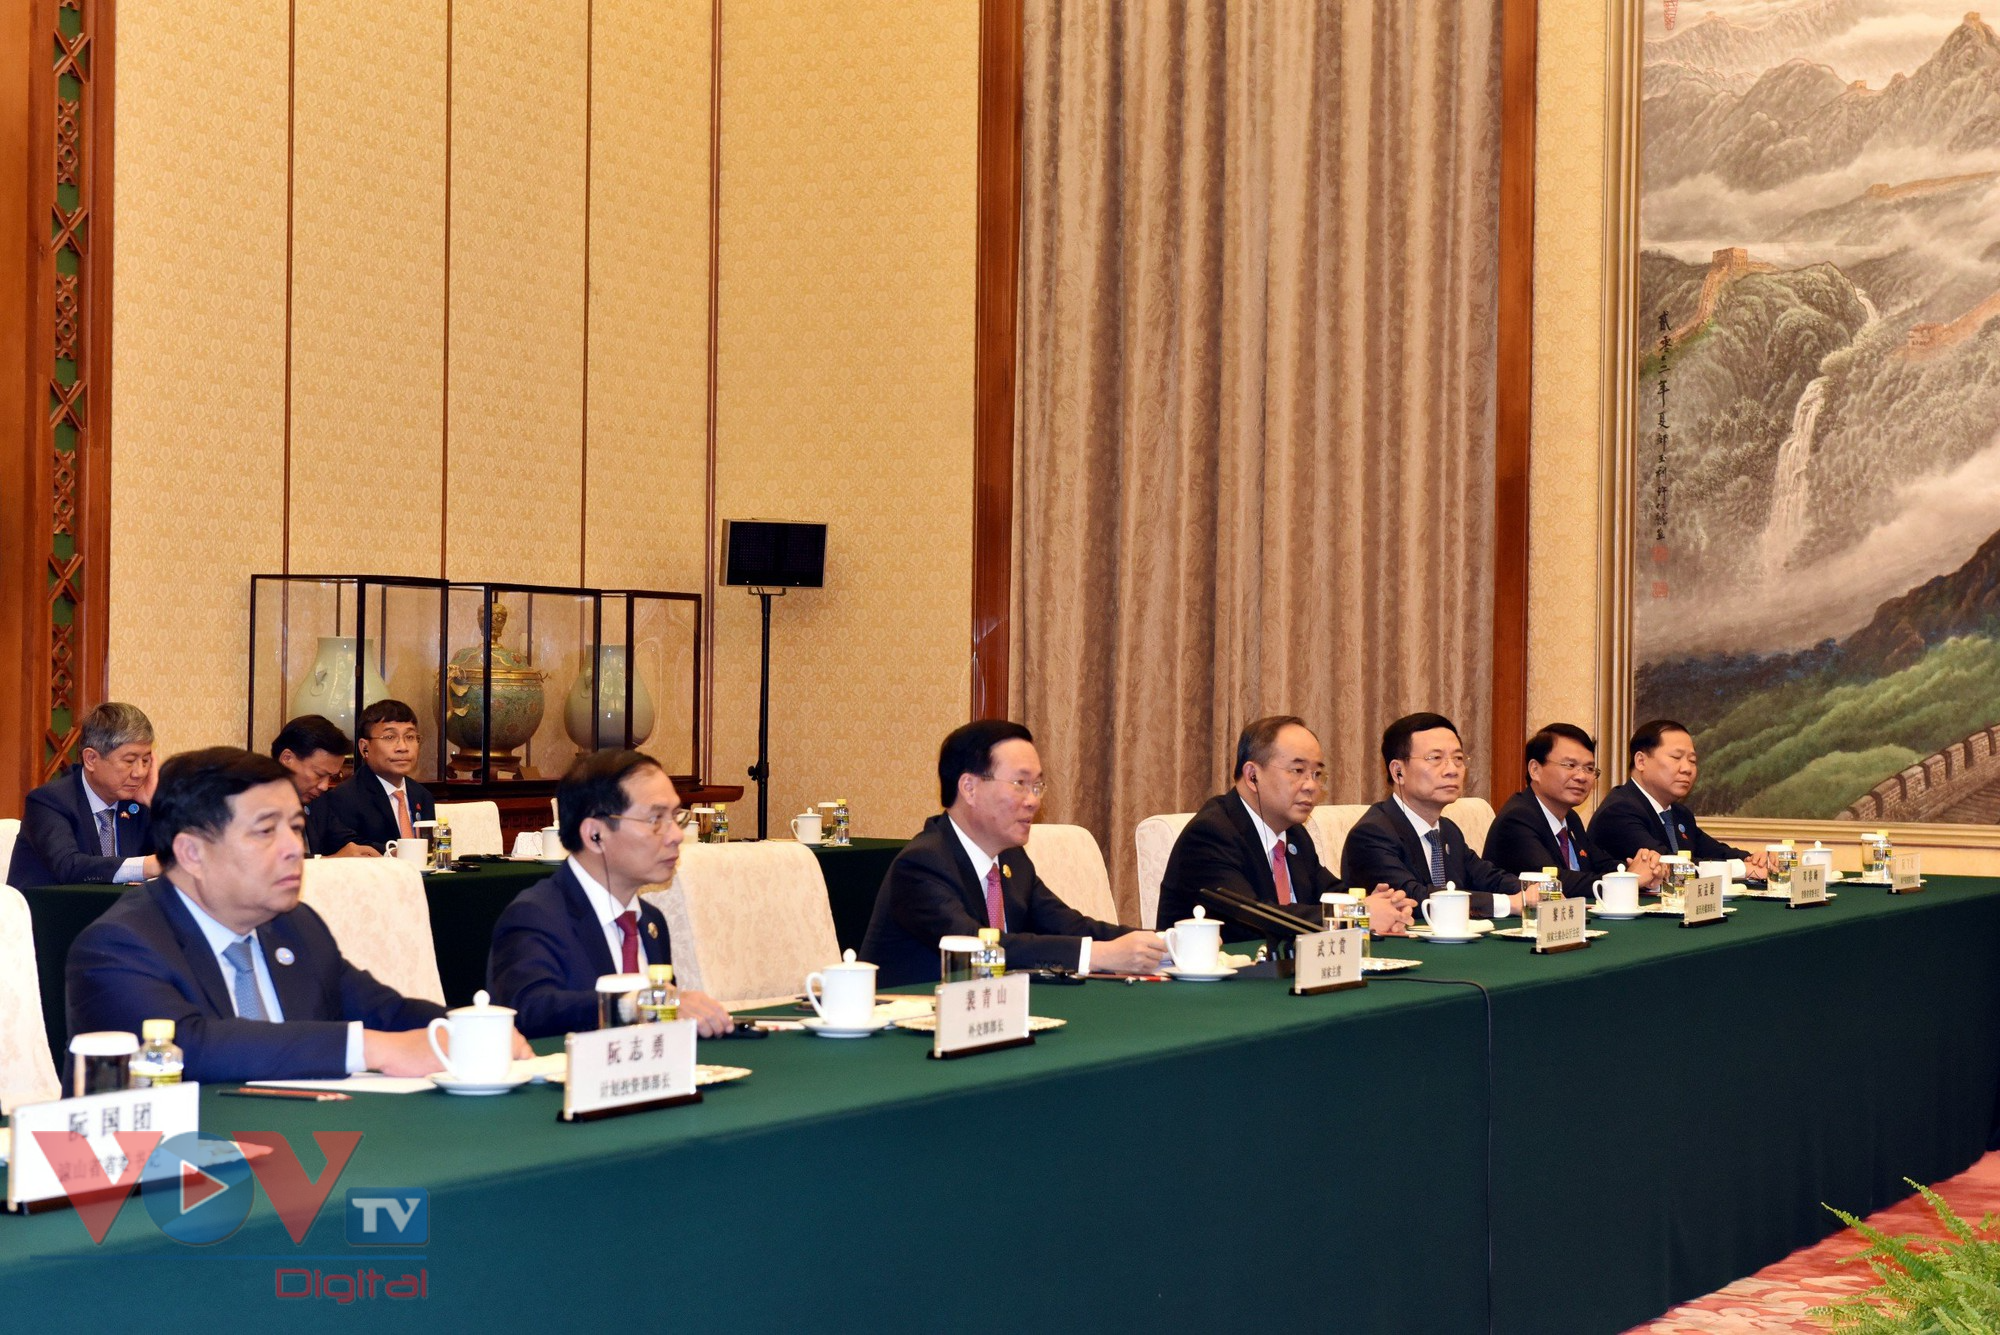 Chủ tịch nước hội kiến Ủy viên trưởng Nhân đại toàn quốc Trung Quốc - Ảnh 2.